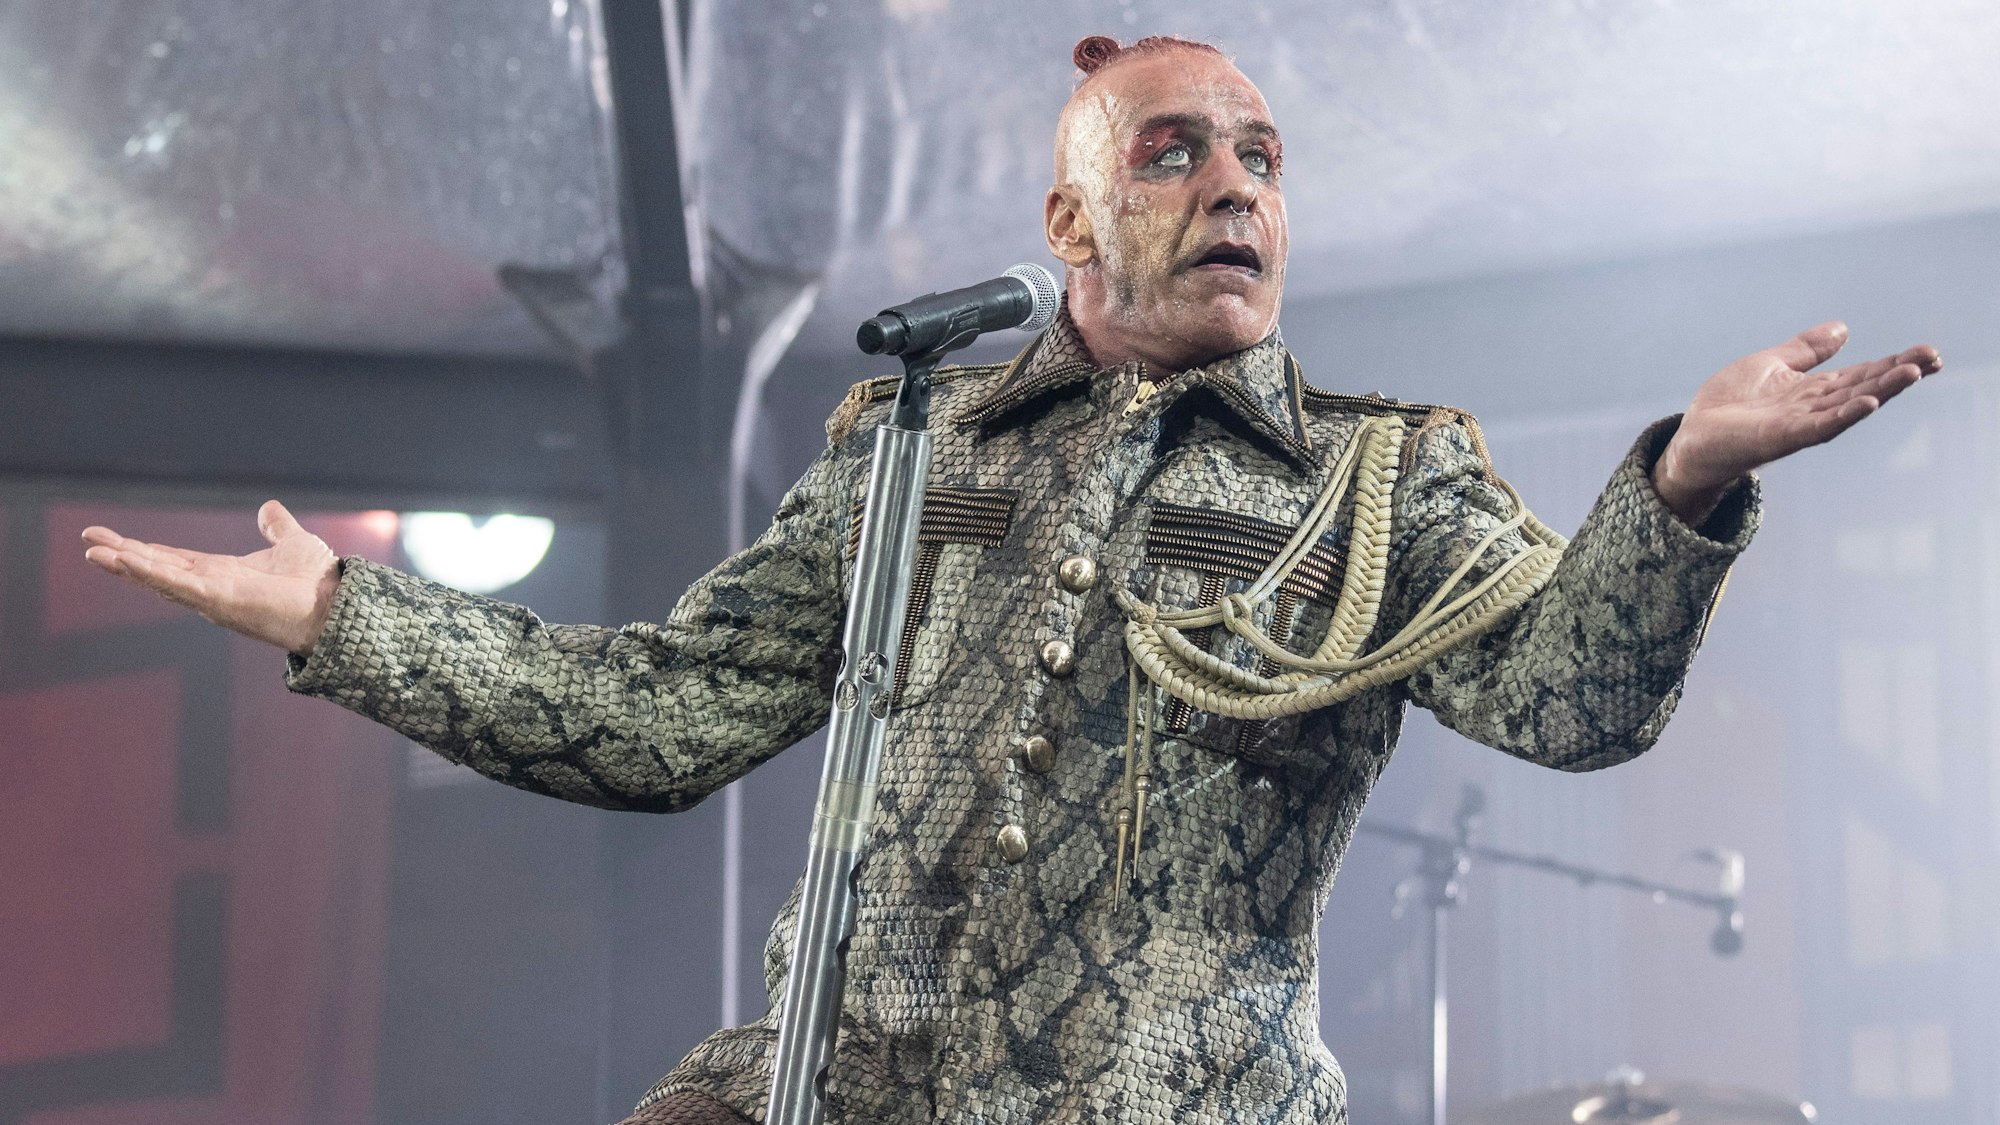 Till Lindemann, Frontsänger der deutschen Rockband Rammstein, singt in der Commerzbank-Arena. Die Band tritt hier im Rahmen ihrer «Europe Stadion Tour 2019» auf. (zu dpa: «Rammstein kündigt remastertes Debütalbum «Herzeleid» an») +++ dpa-Bildfunk +++